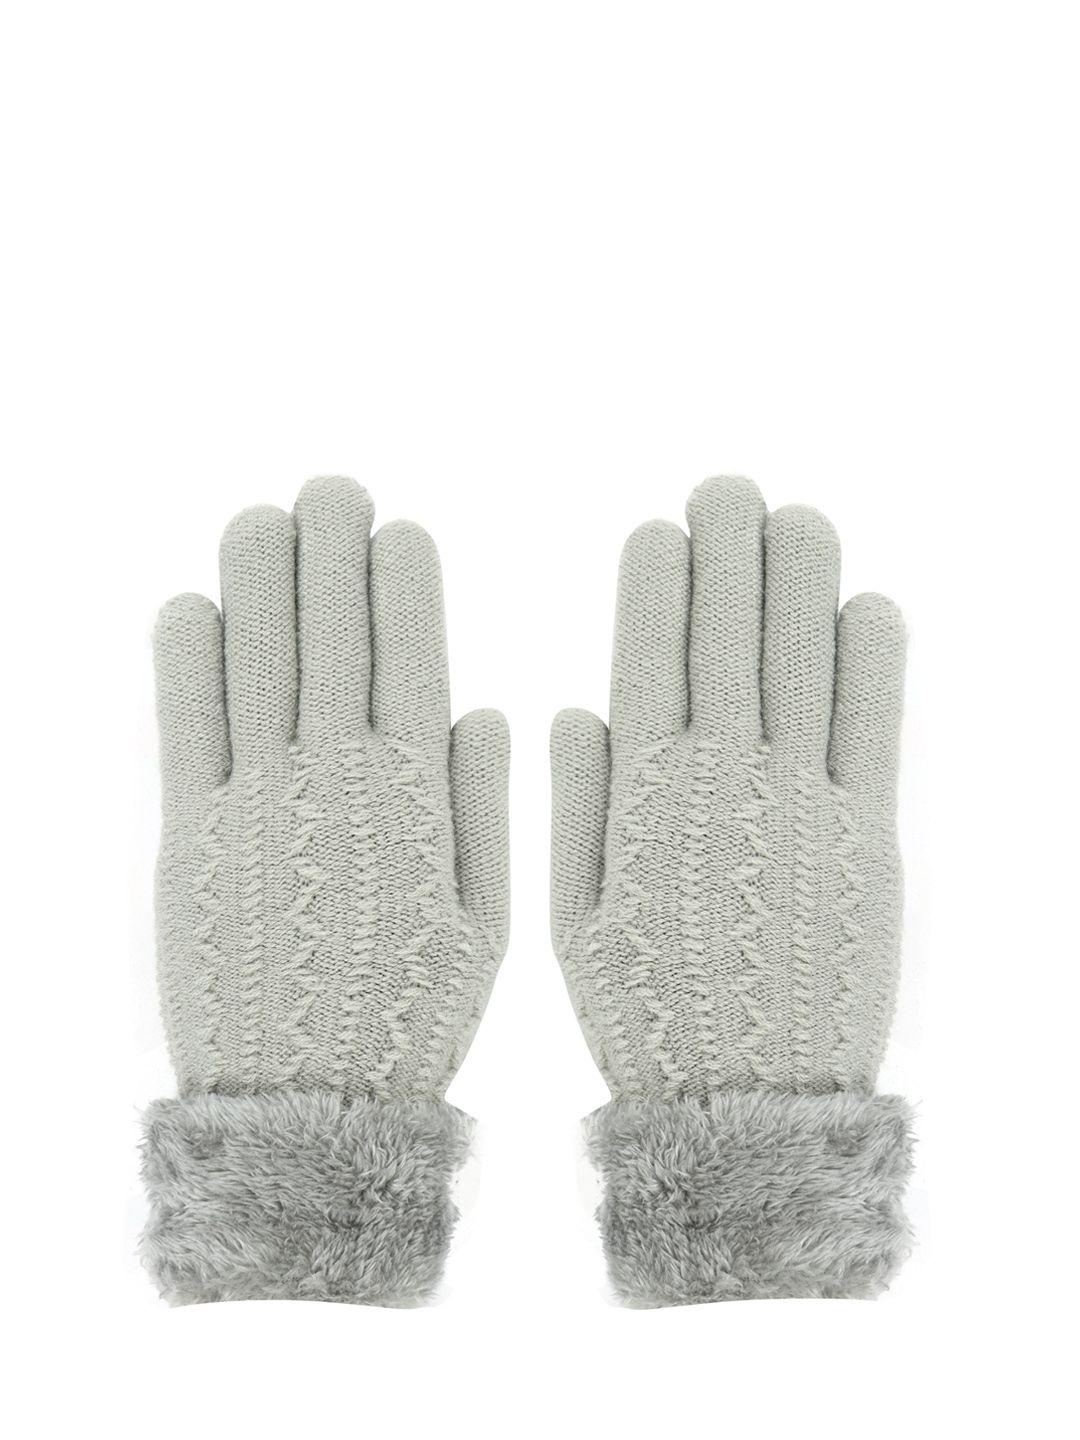 fabseasons kids patterned acrylic winter gloves